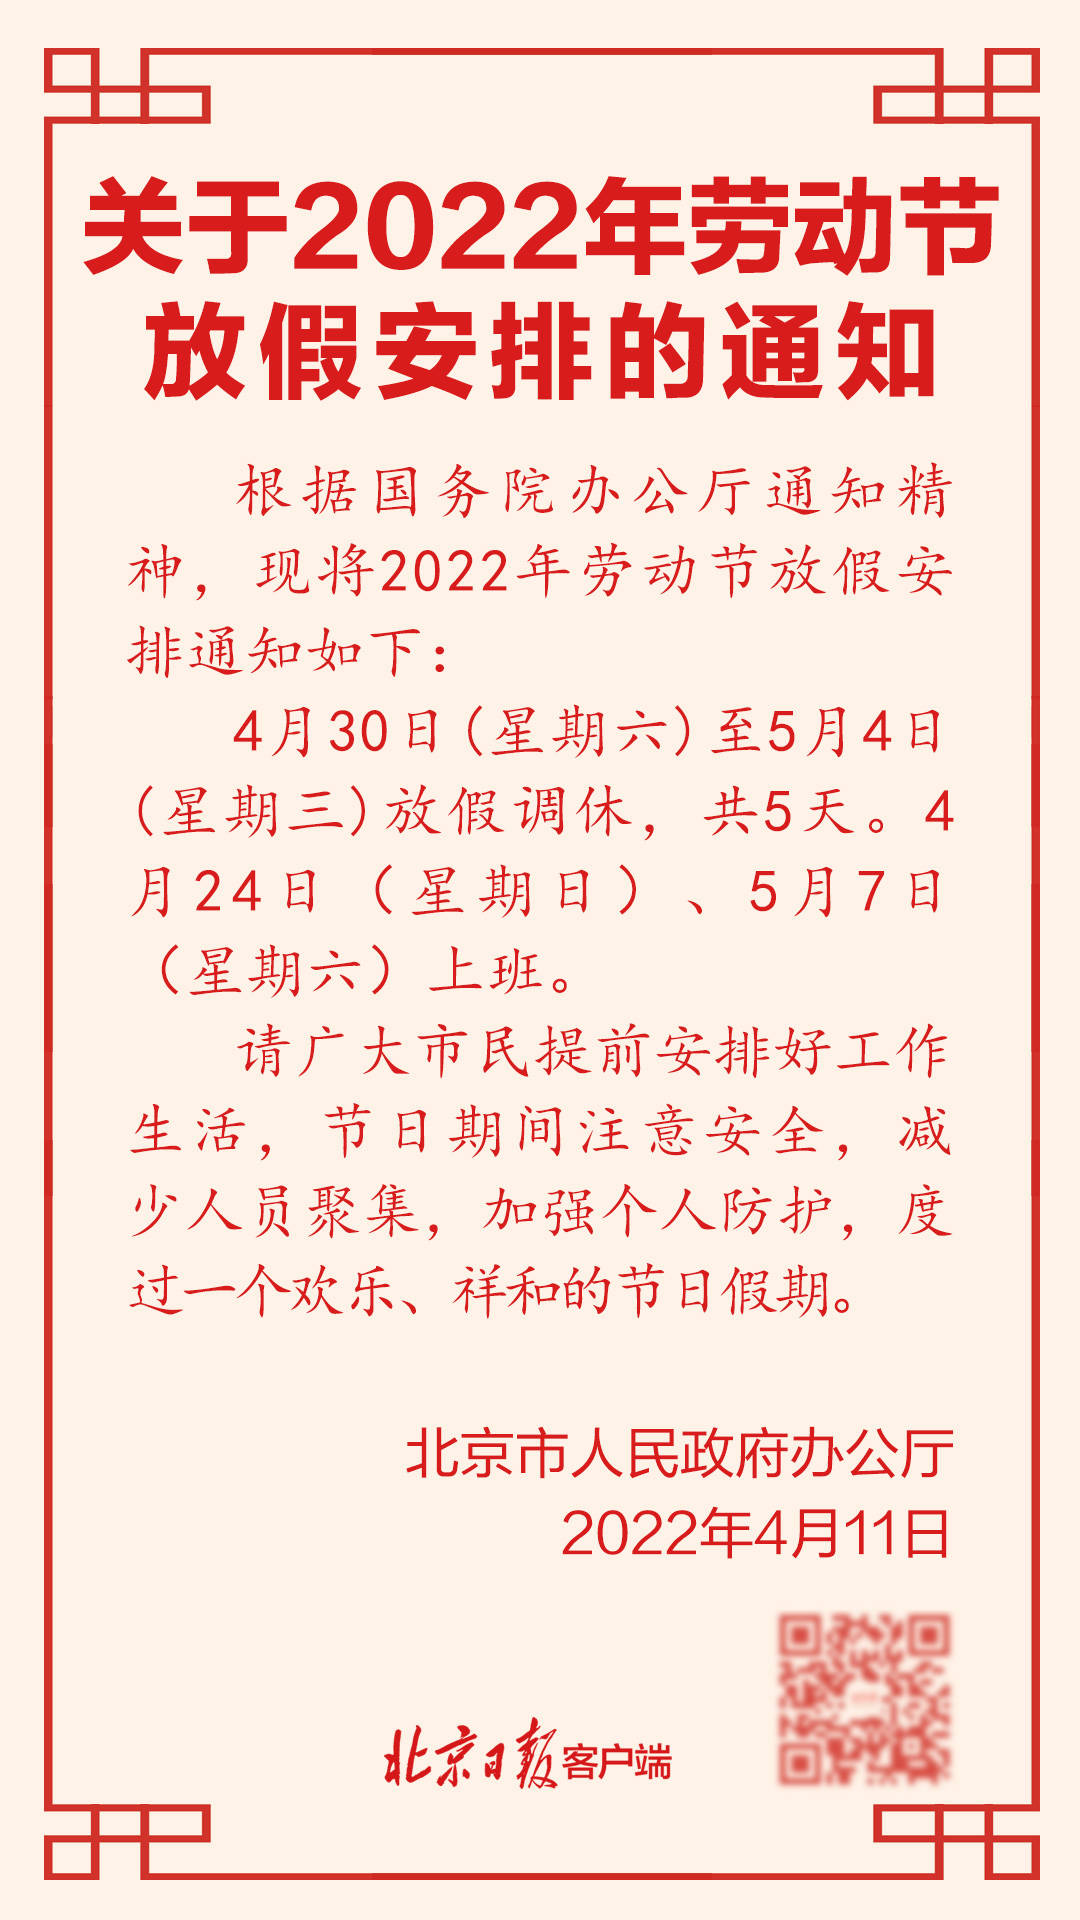 共5天北京市发布2022年劳动节放假安排